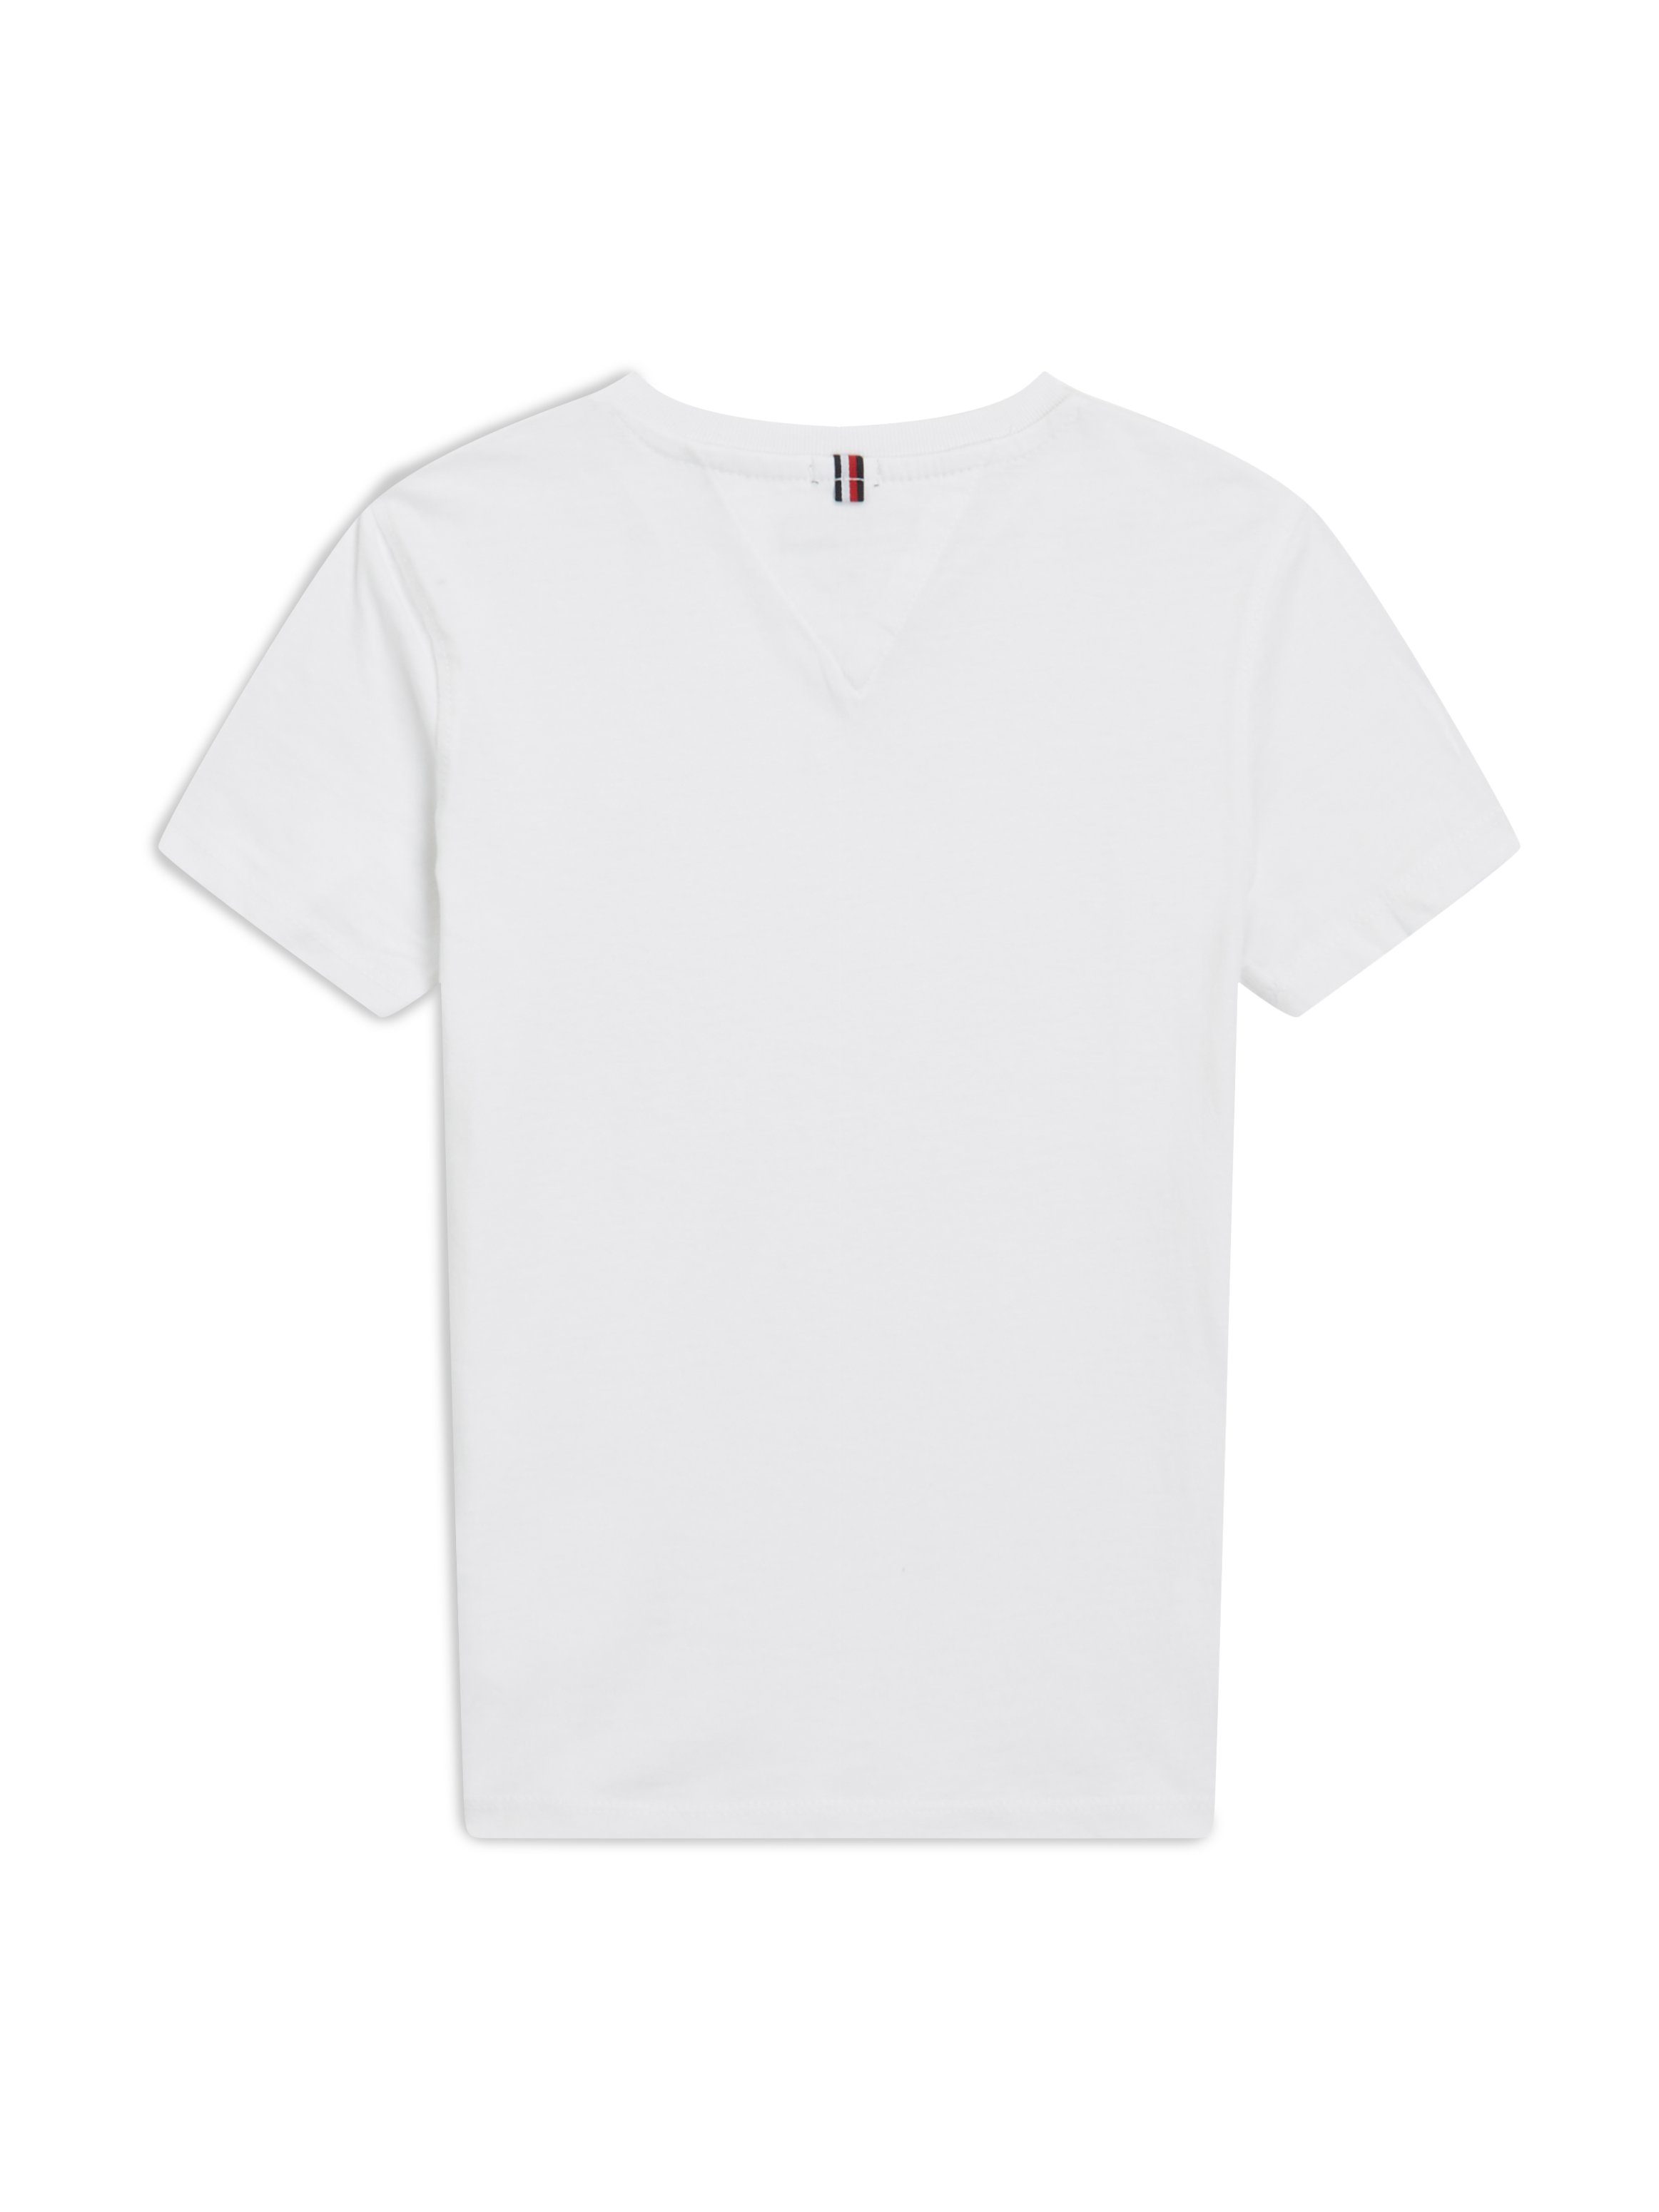 BASIC BOYS KNIT mit S/S Logo-Flag Hilfiger Tommy Tommy V-Shirt VN Hilfiger Bright_White